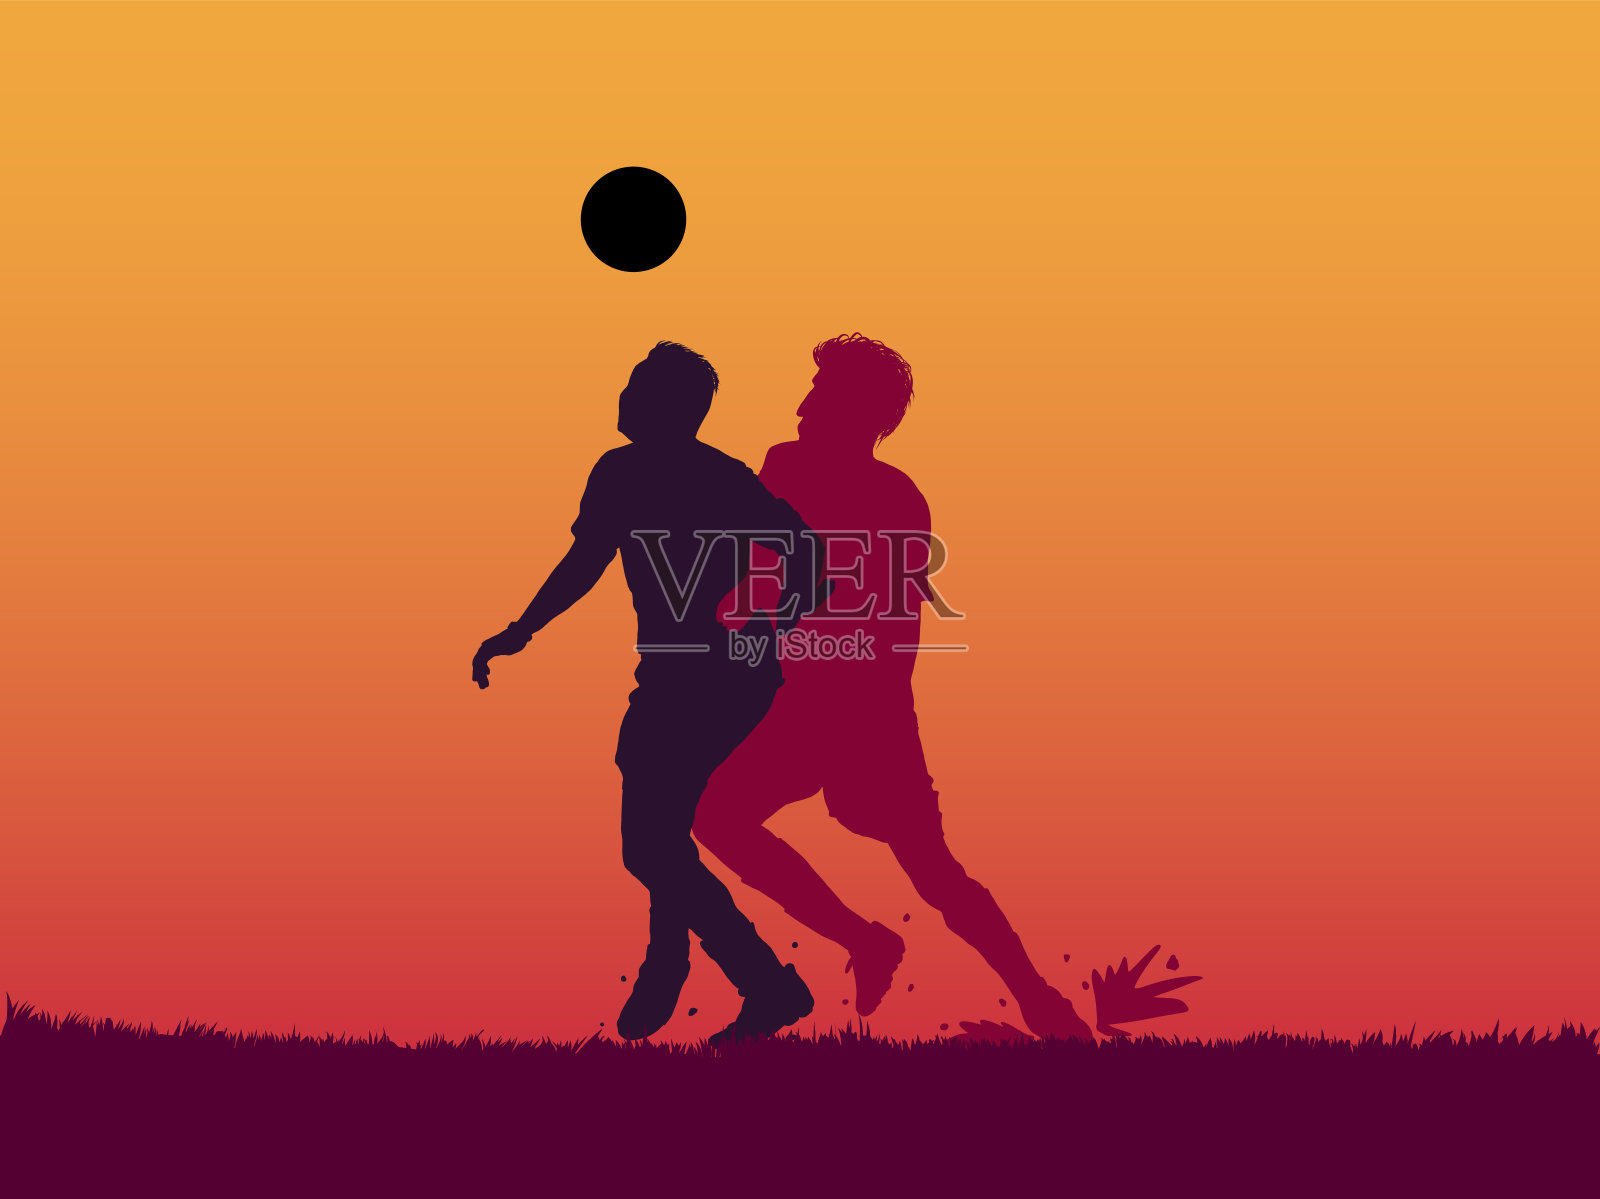 足球运动员跳起头球的剪影插画图片素材